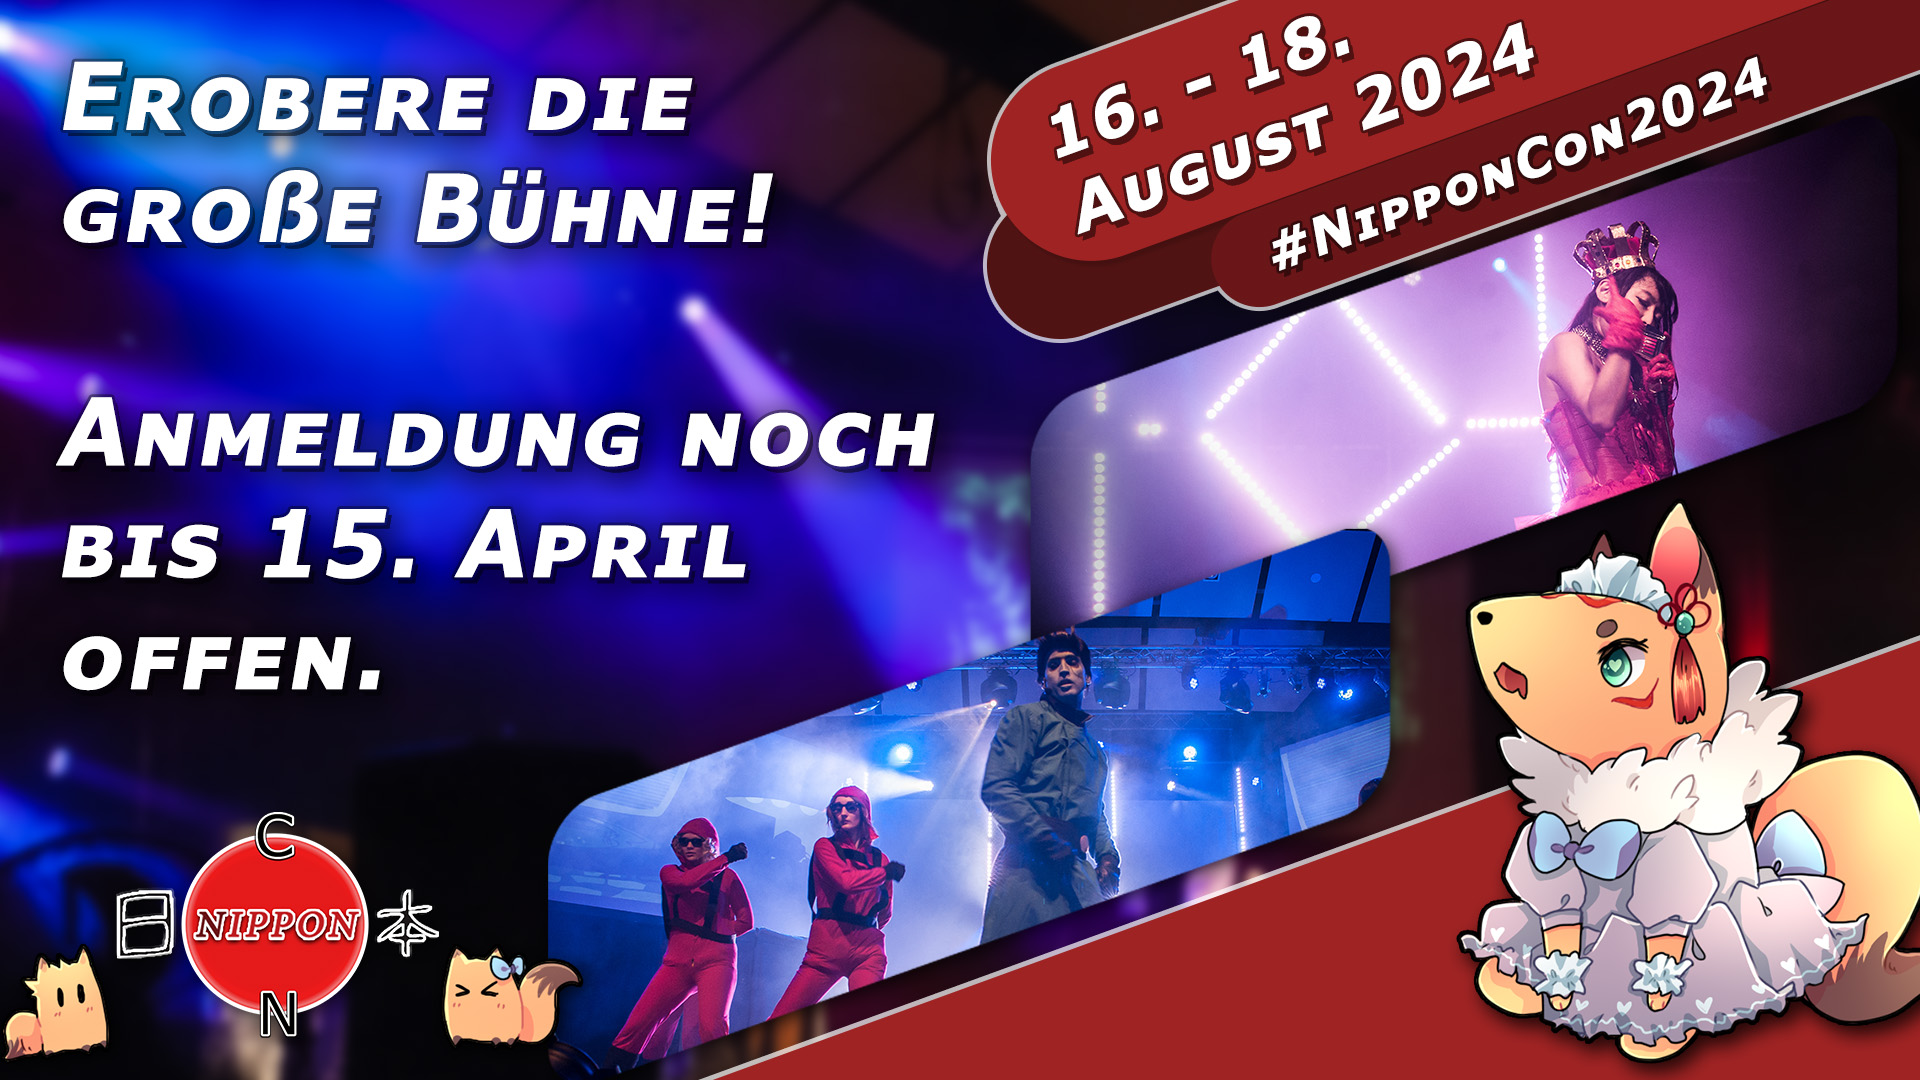 NipponCon 2024 Bremen. Vom 16. bis 18. August 2024. #NipponCon2024. Erobere die Große Bühne. Anmeldung noch bis 15. April offen.